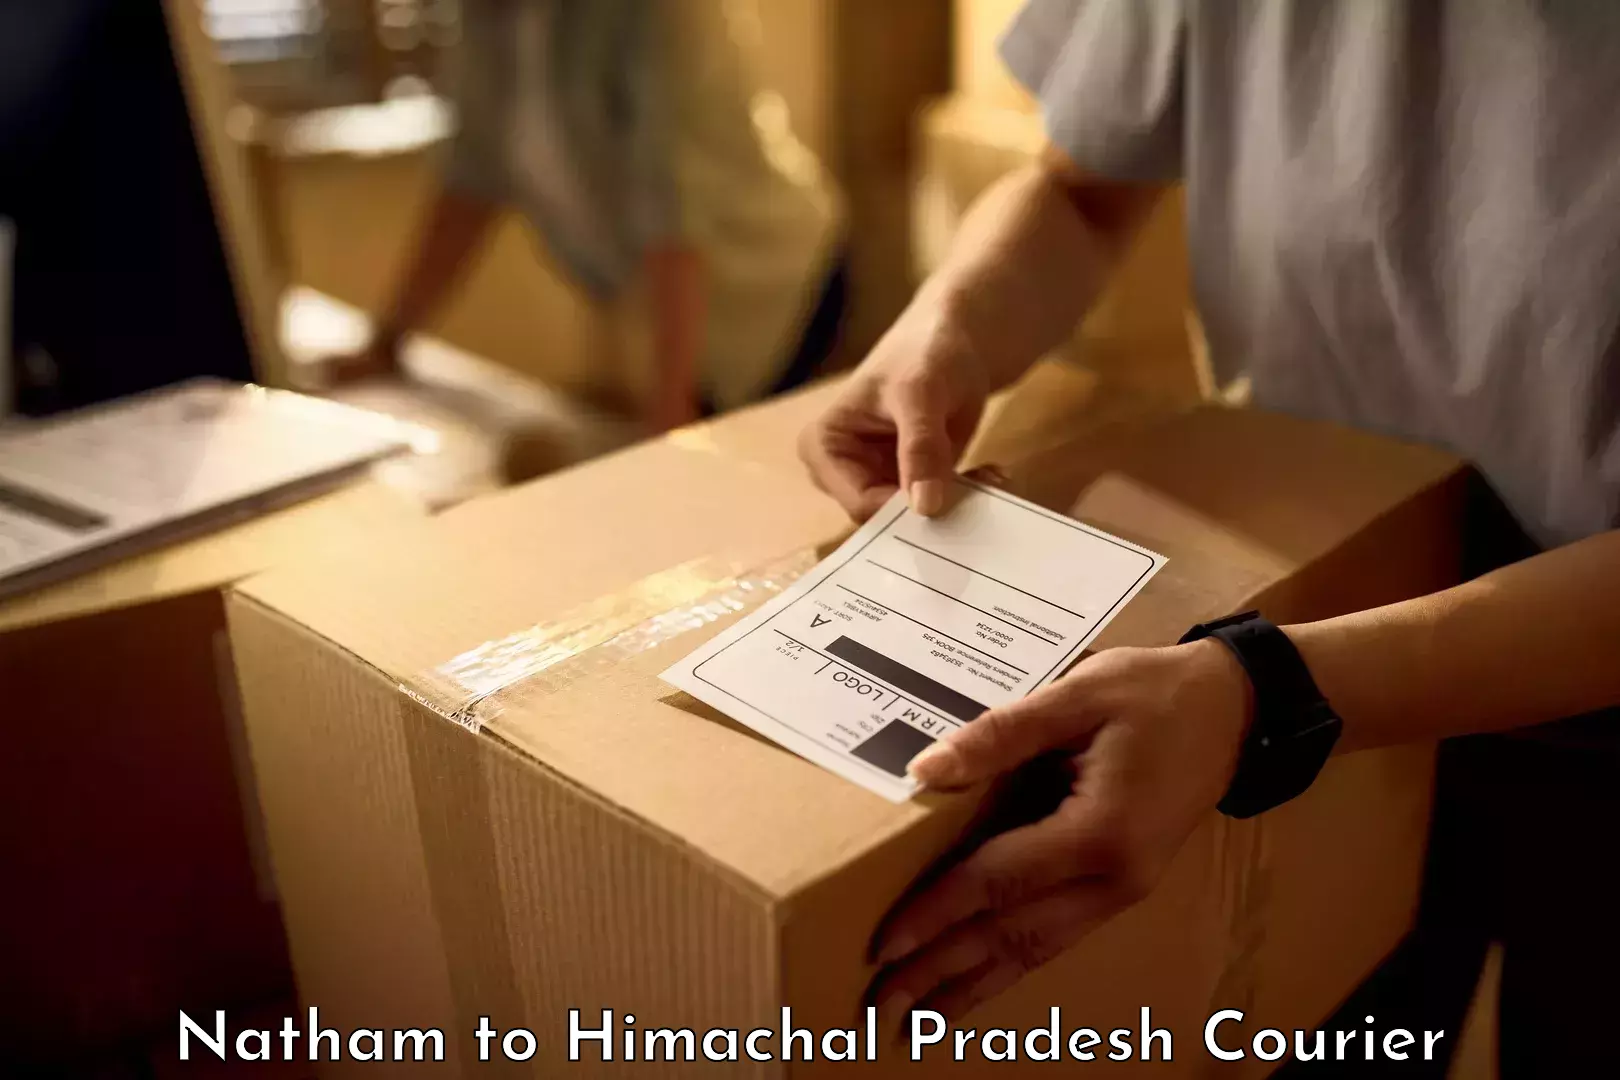 Baggage transport scheduler Natham to Himachal Pradesh